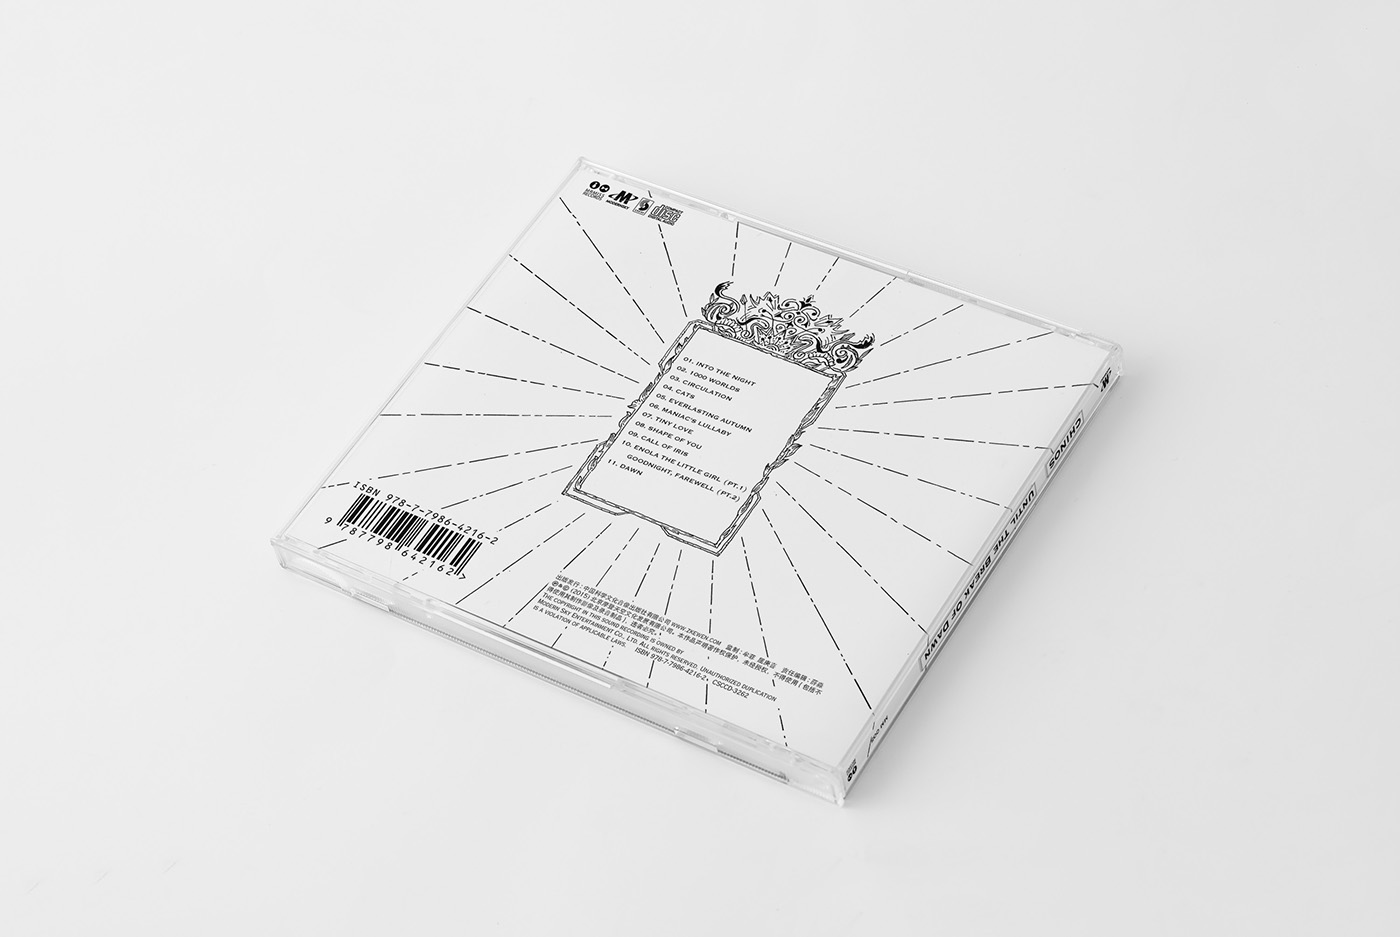 MUSIC RECORD music album album art 插图 平面设计 Music Packaging visual design 包装设计 字体设计 图形设计